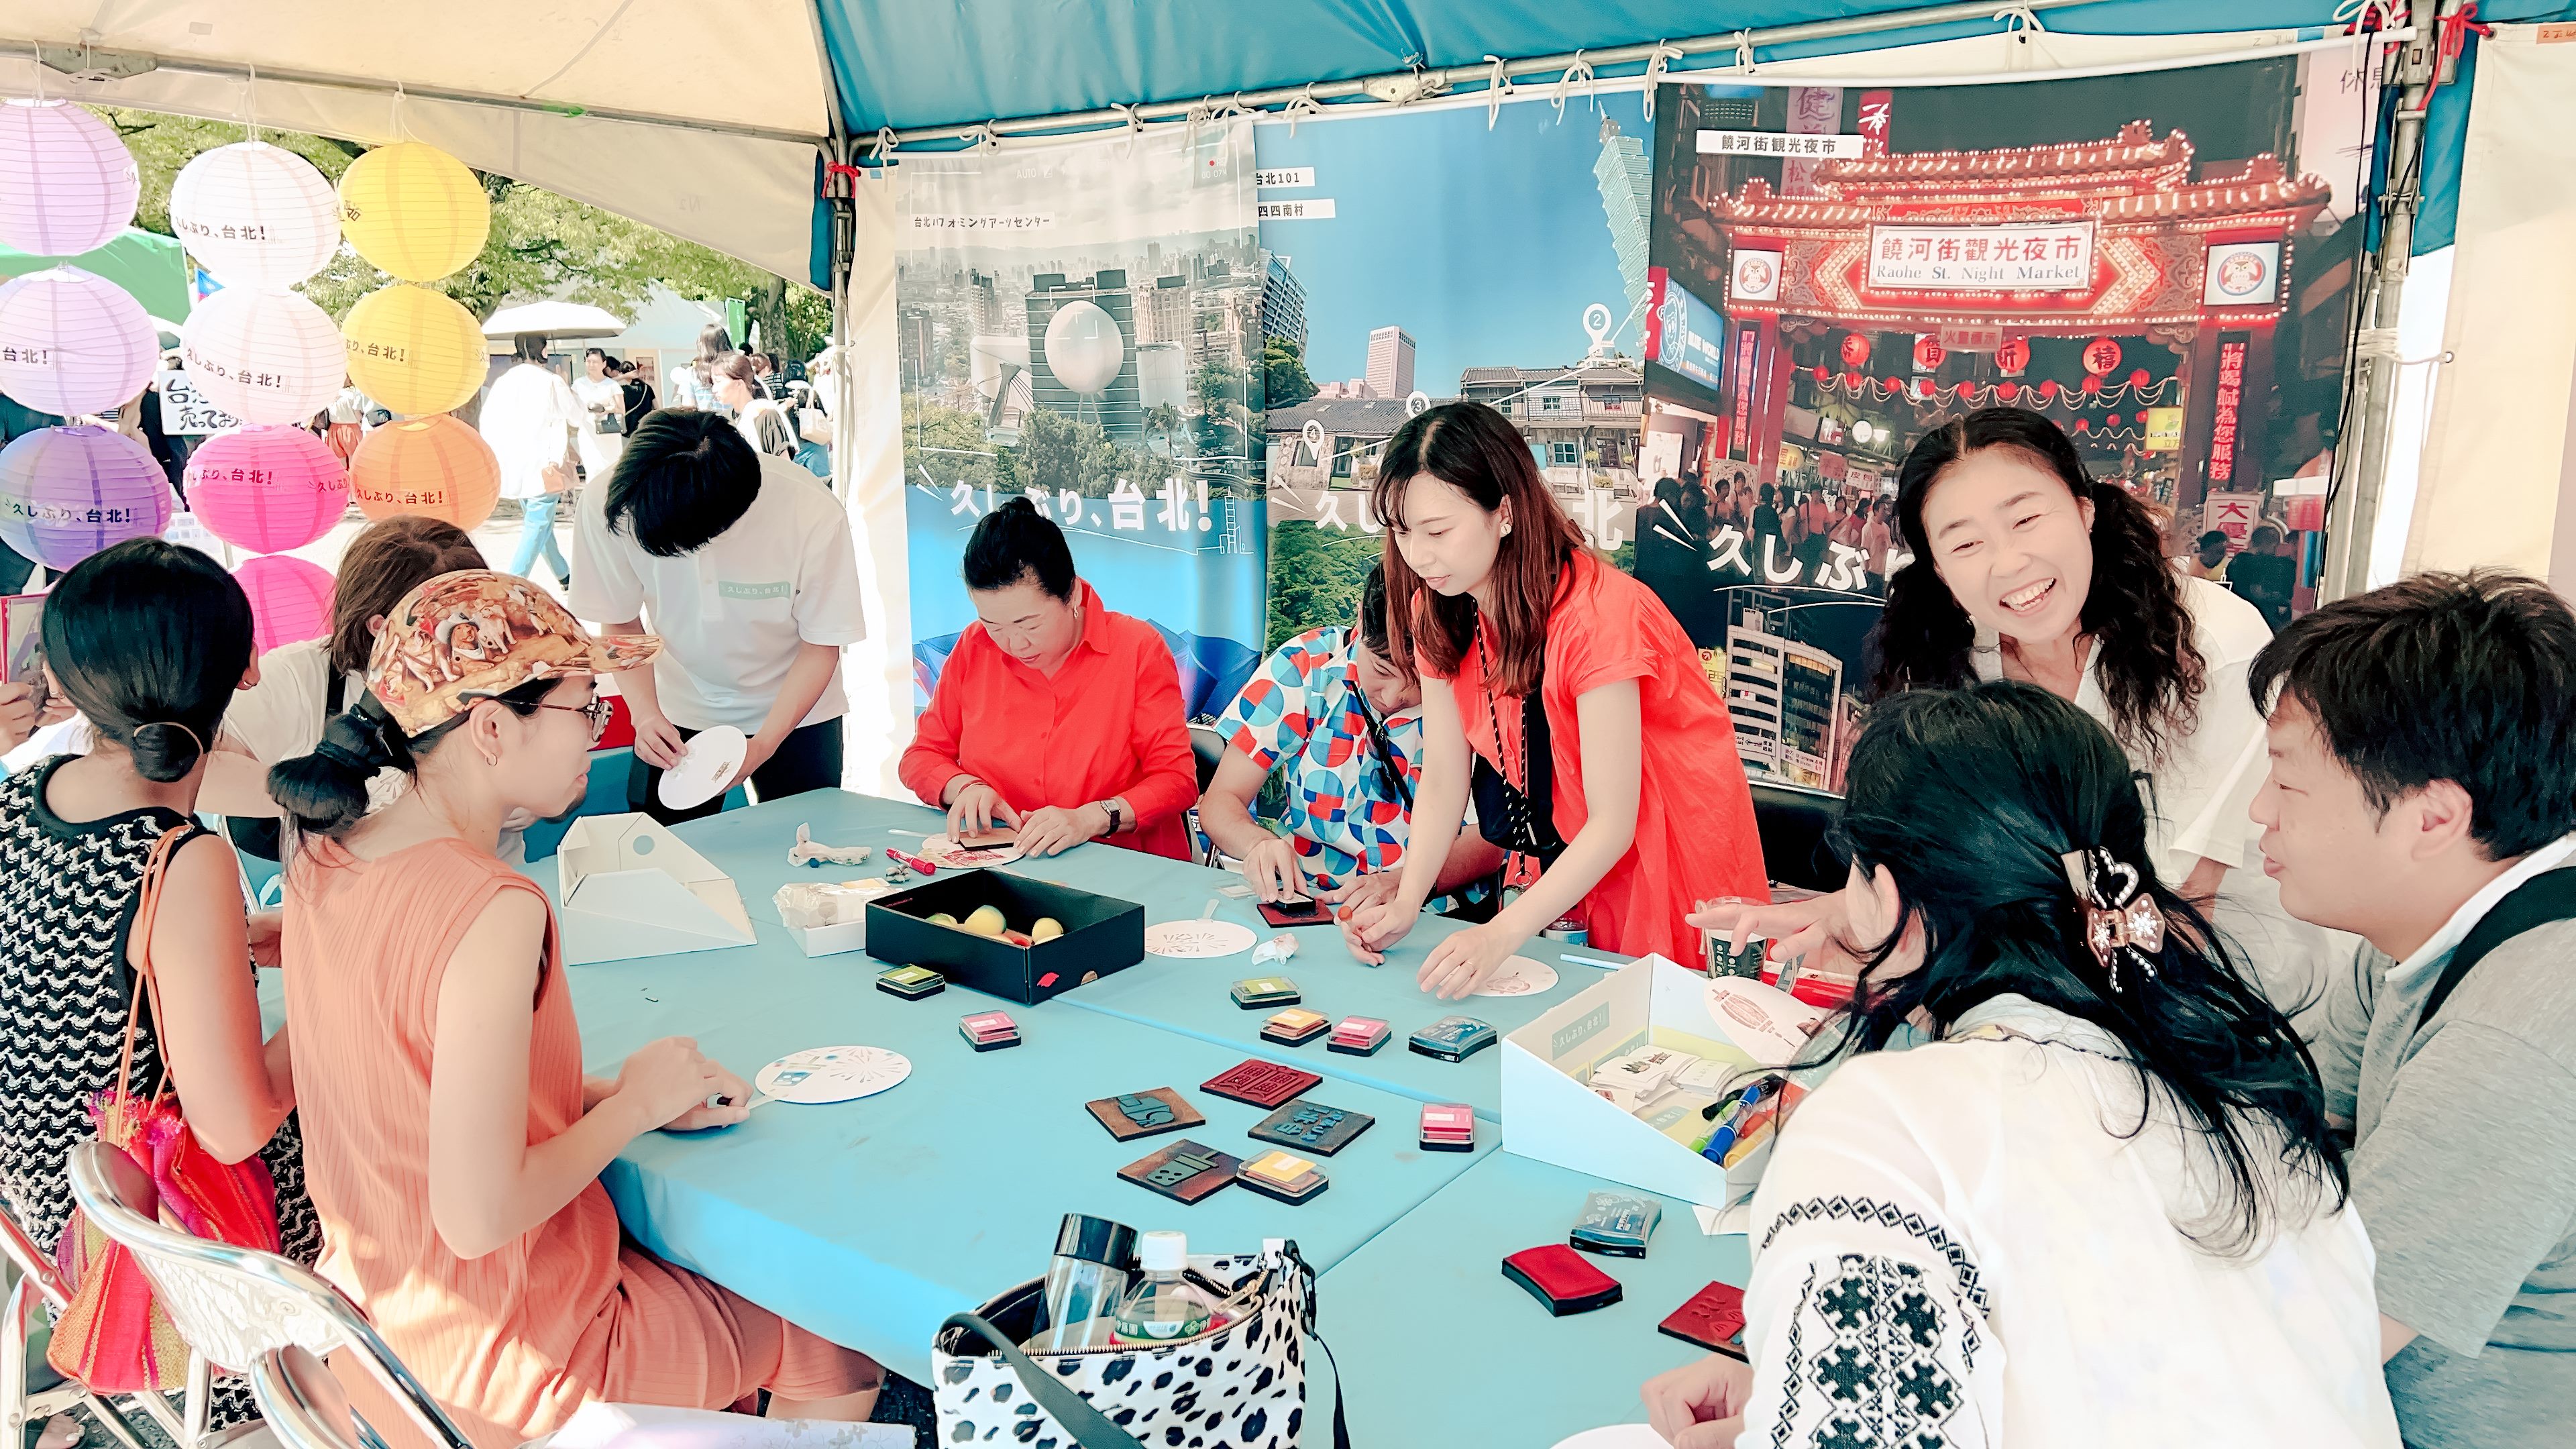 臺北攤位的DIY手作臺北風情扇活動十分受日本民眾喜愛。